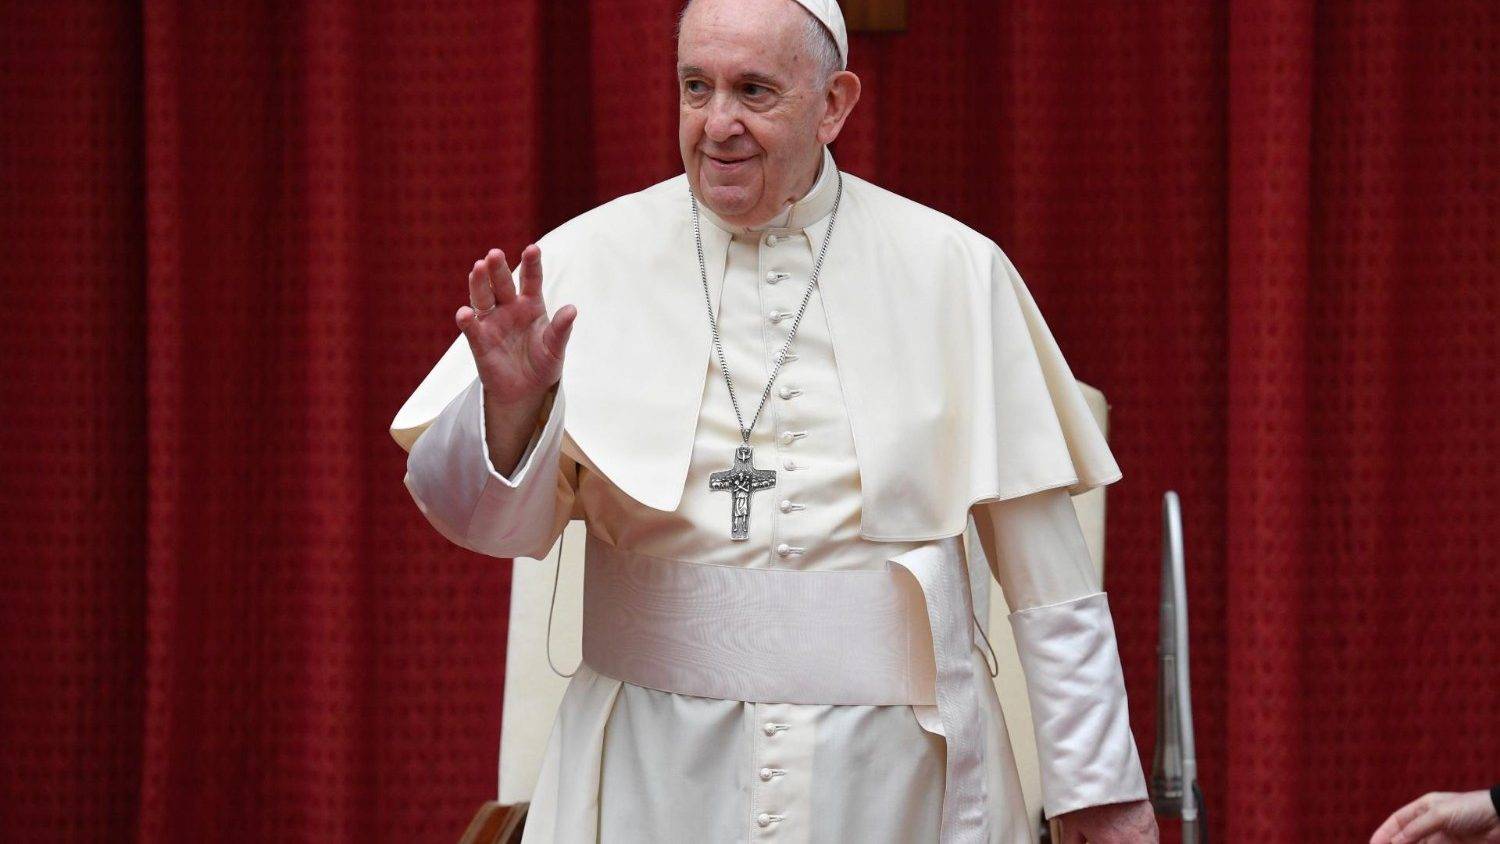 pope benedict xvi visit to uk